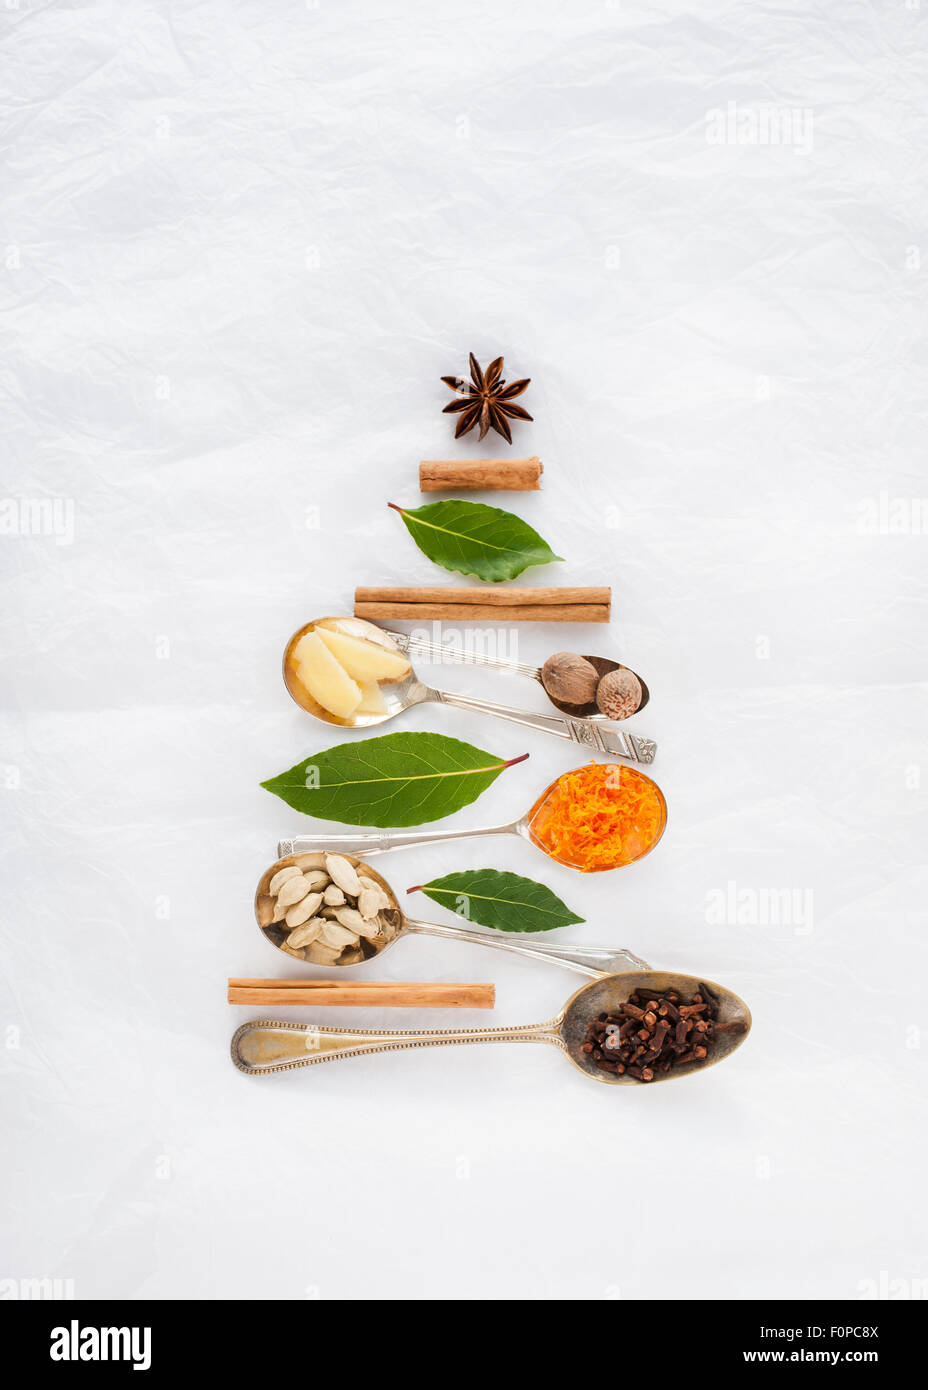 Una forma de árbol de Navidad hecho con cucharas y especias canela nuez moscada anís estrella laurel clavo Cardamom pods jengibre cáscara de naranja Foto de stock